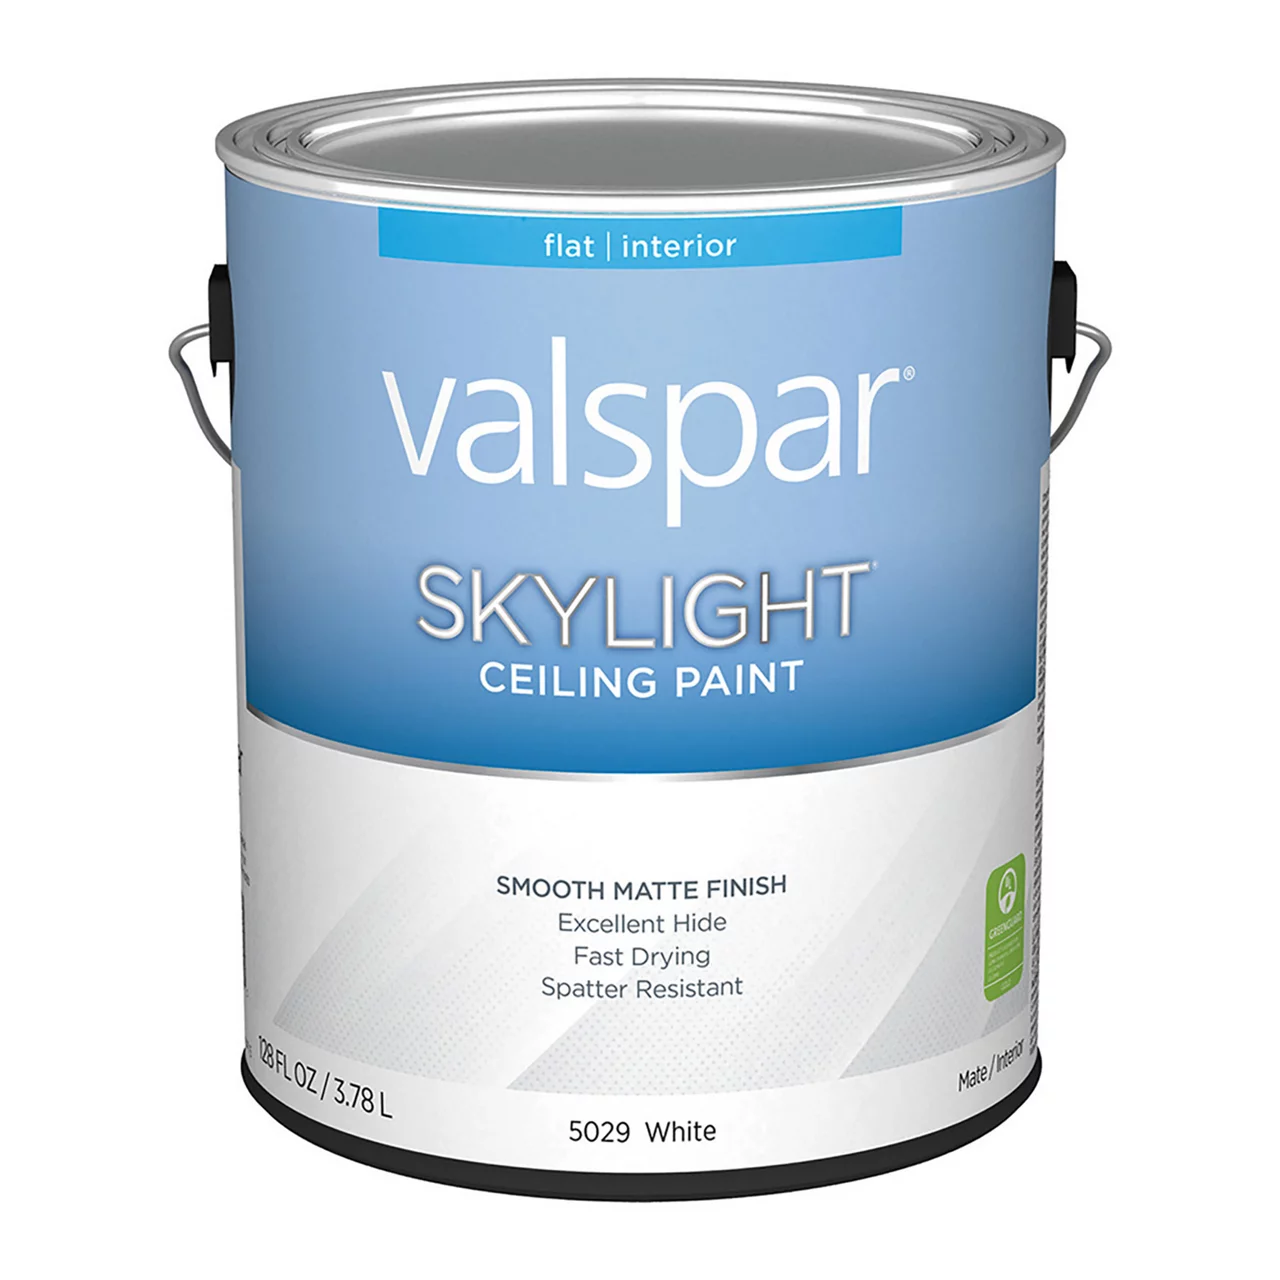 Skylight ceiling paint